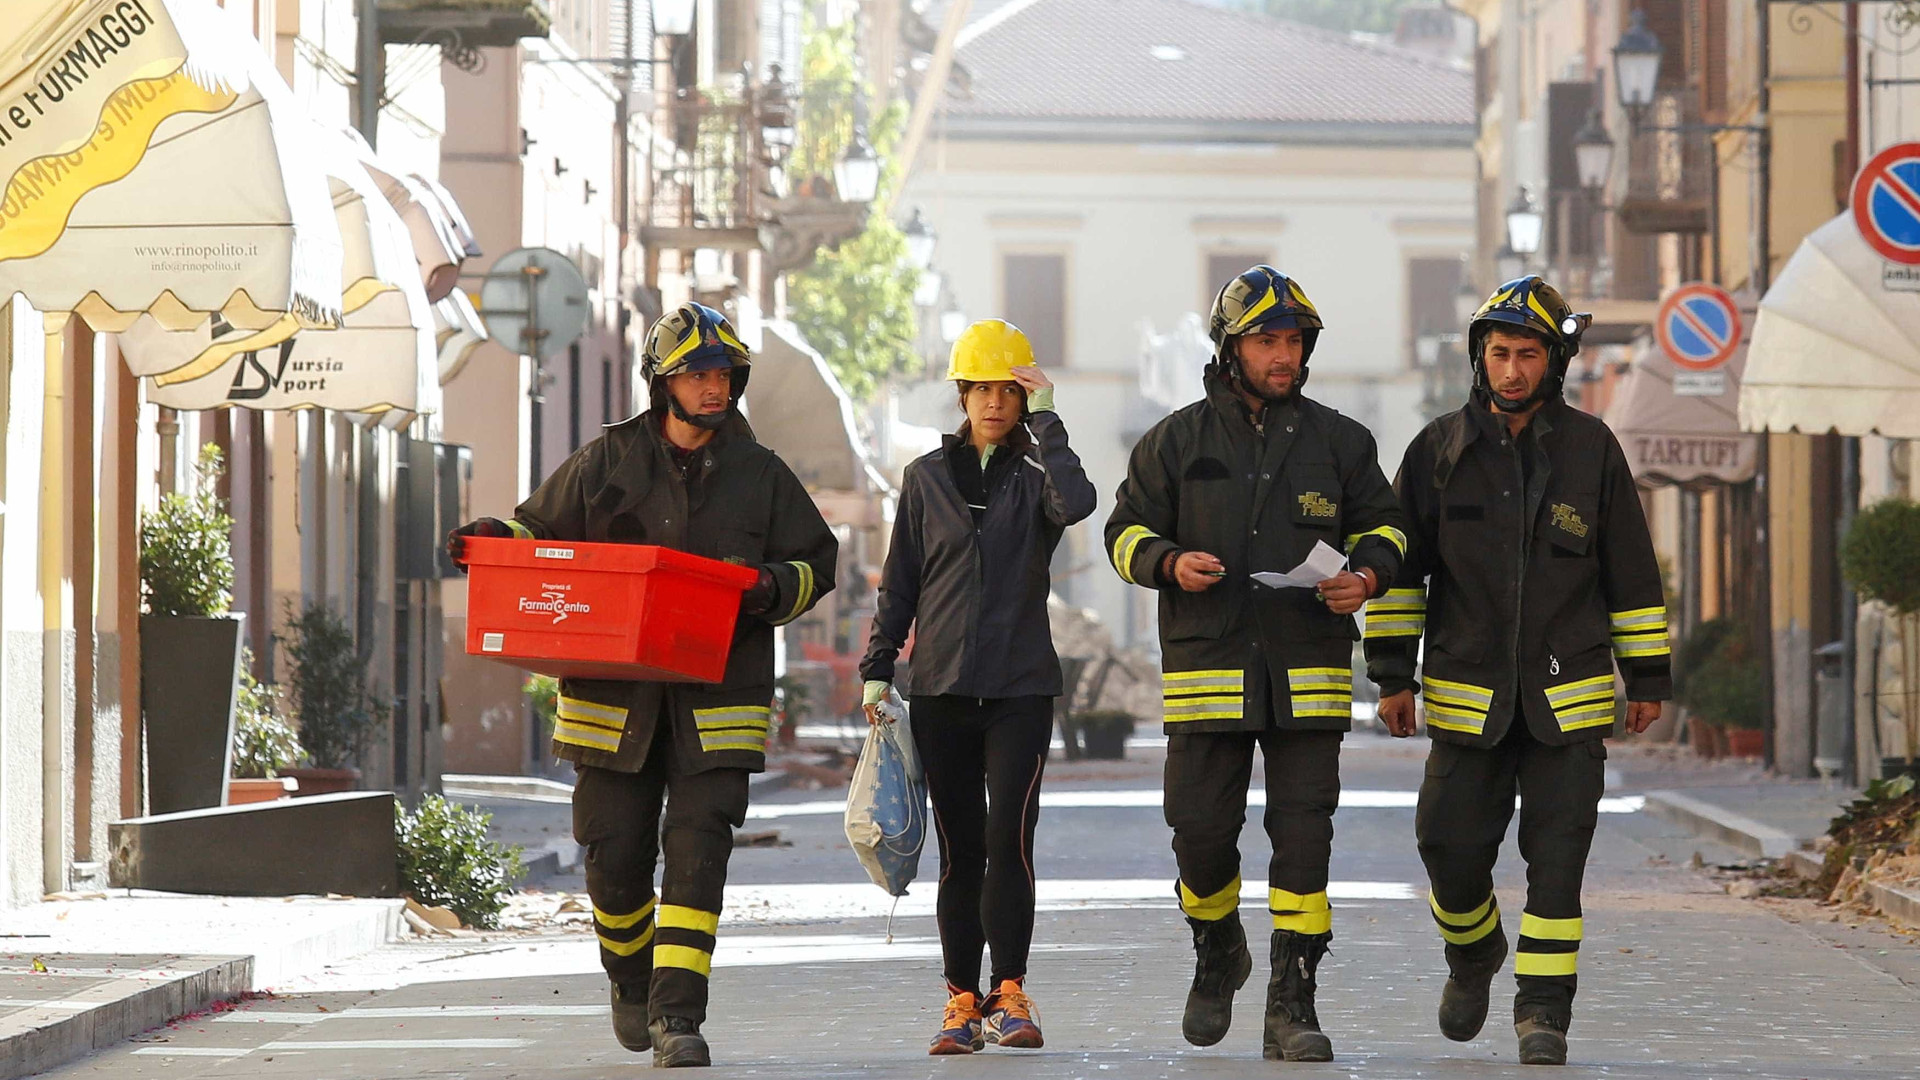 Após terremotos, Itália prevê gastar 1,1 bi 
de euros até 2022